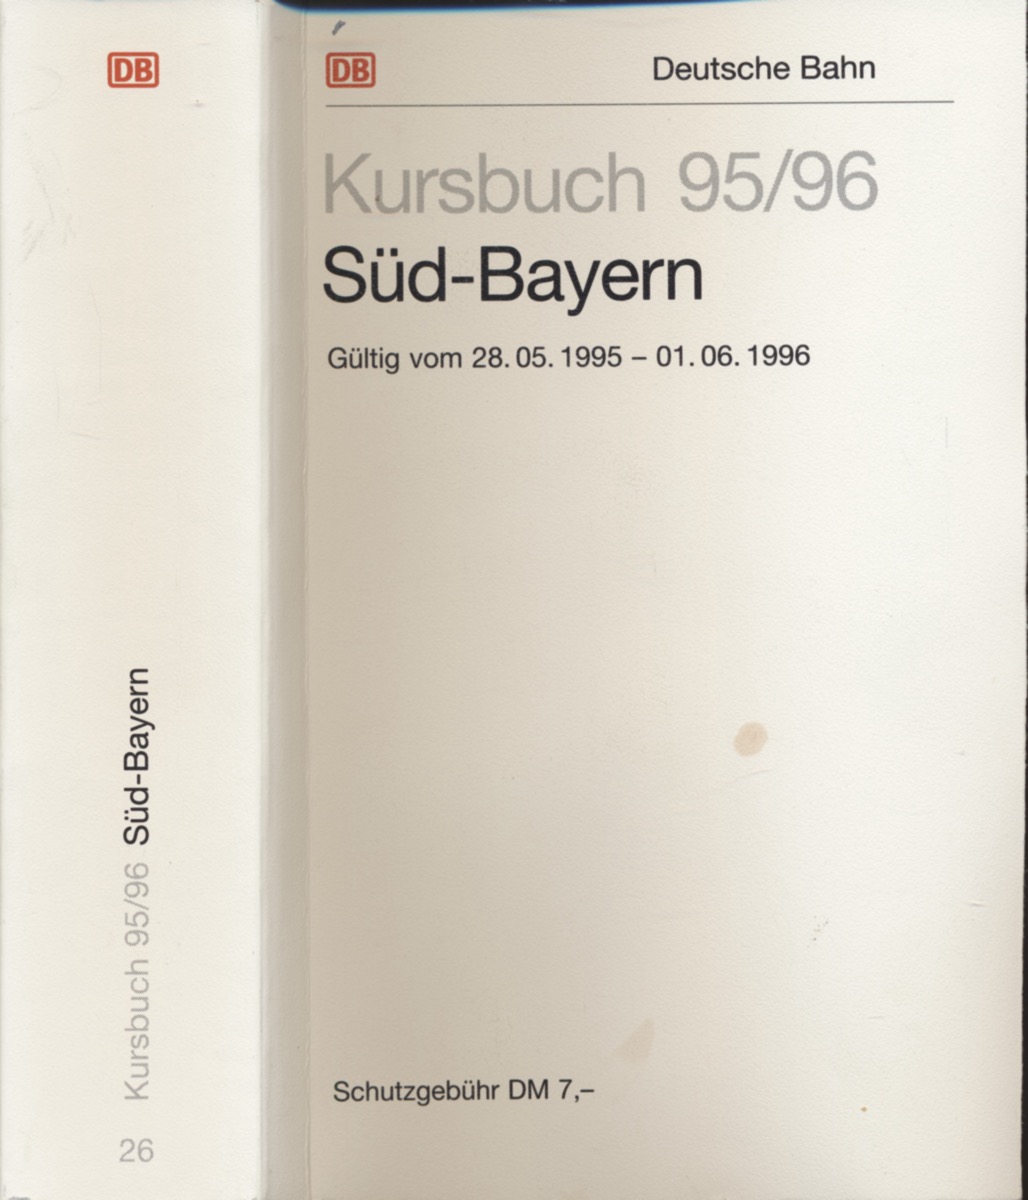 DEUTSCHE BAHN (Hrg.)  Kursbuch Süd-Bayern 1995/96, gültig vom 28.05.1995 bis 01.06.1996. 